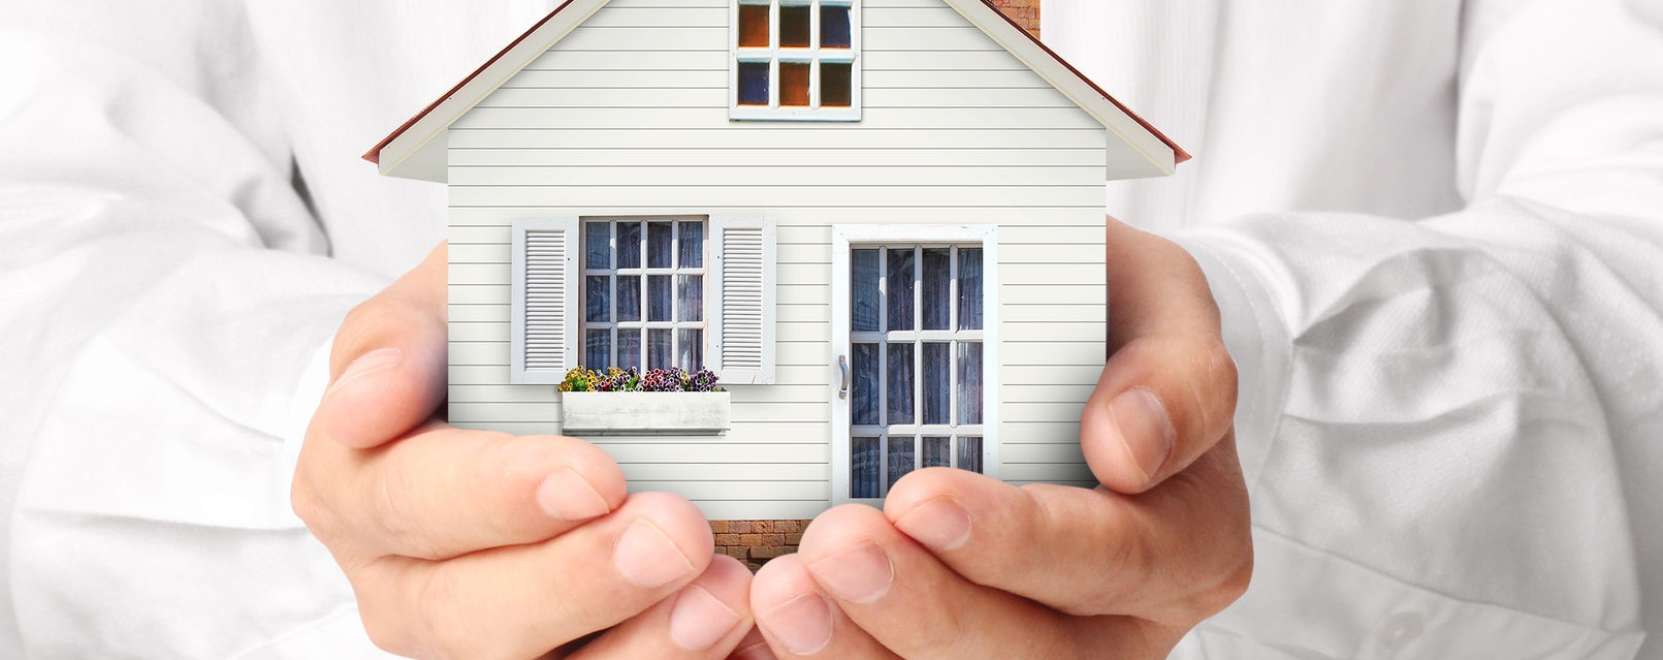 Távoli lakásfelügyelet: így is biztonságosabbá teheti otthonát